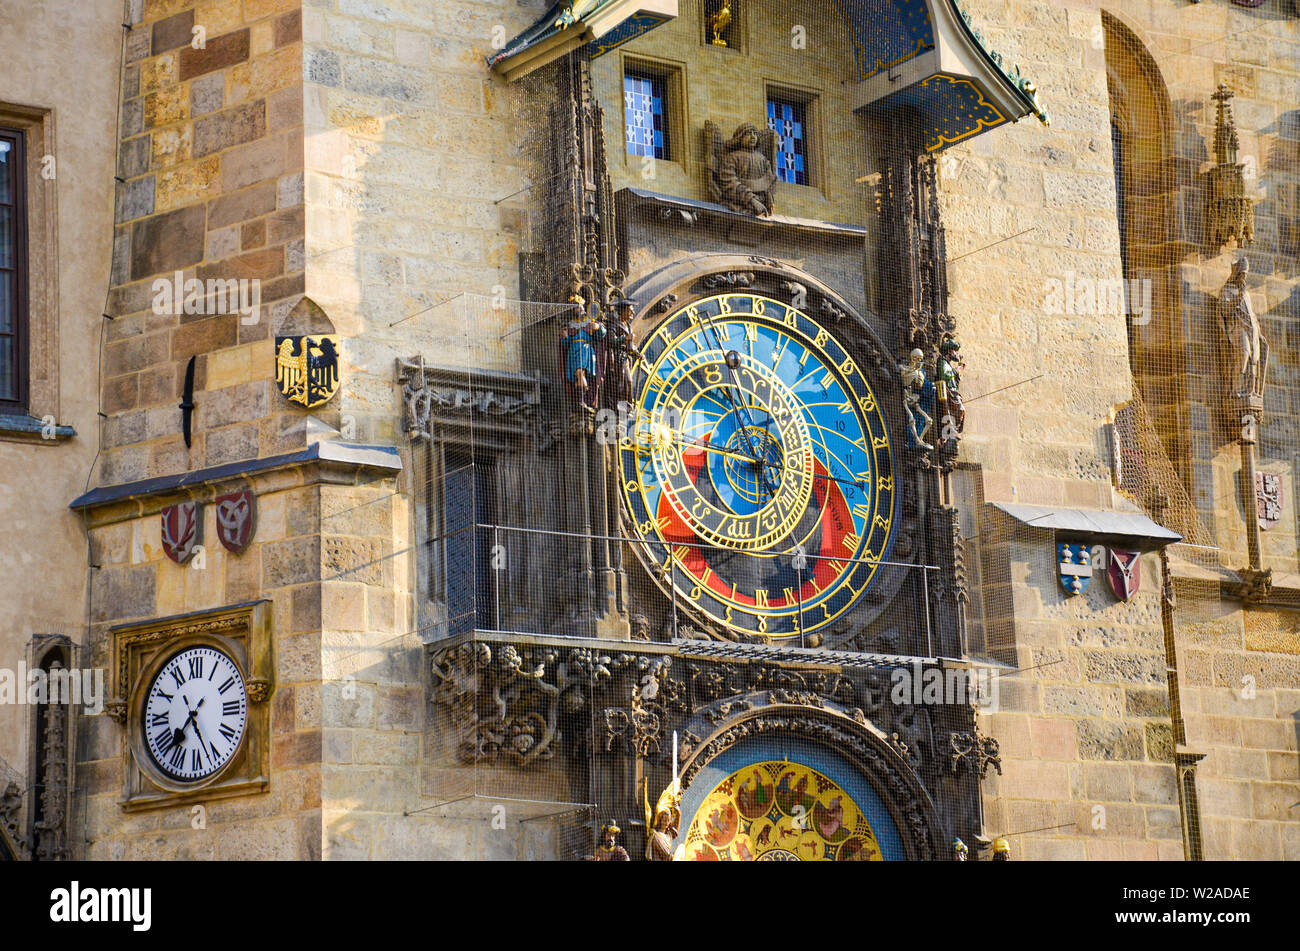 Horloge astronomique de Prague, République tchèque. Orloj célèbre sur la place de la vieille ville de la capitale tchèque. Photographié au cours matin heure d'or. Détail, Close up. Belle architecture. Banque D'Images